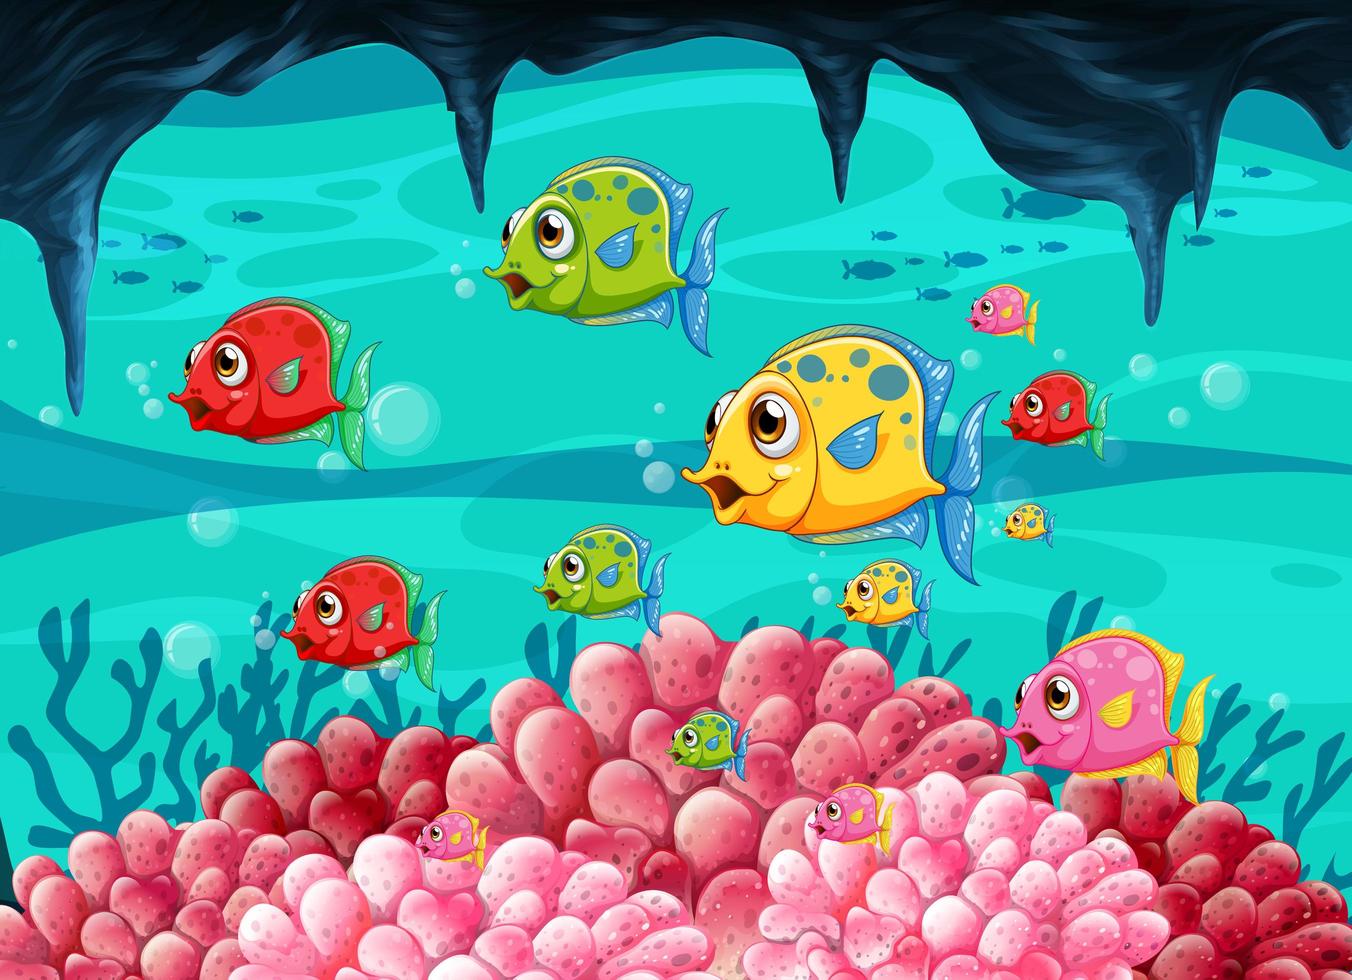 muitos peixes exóticos personagem de desenho animado na cena subaquática com corais vetor